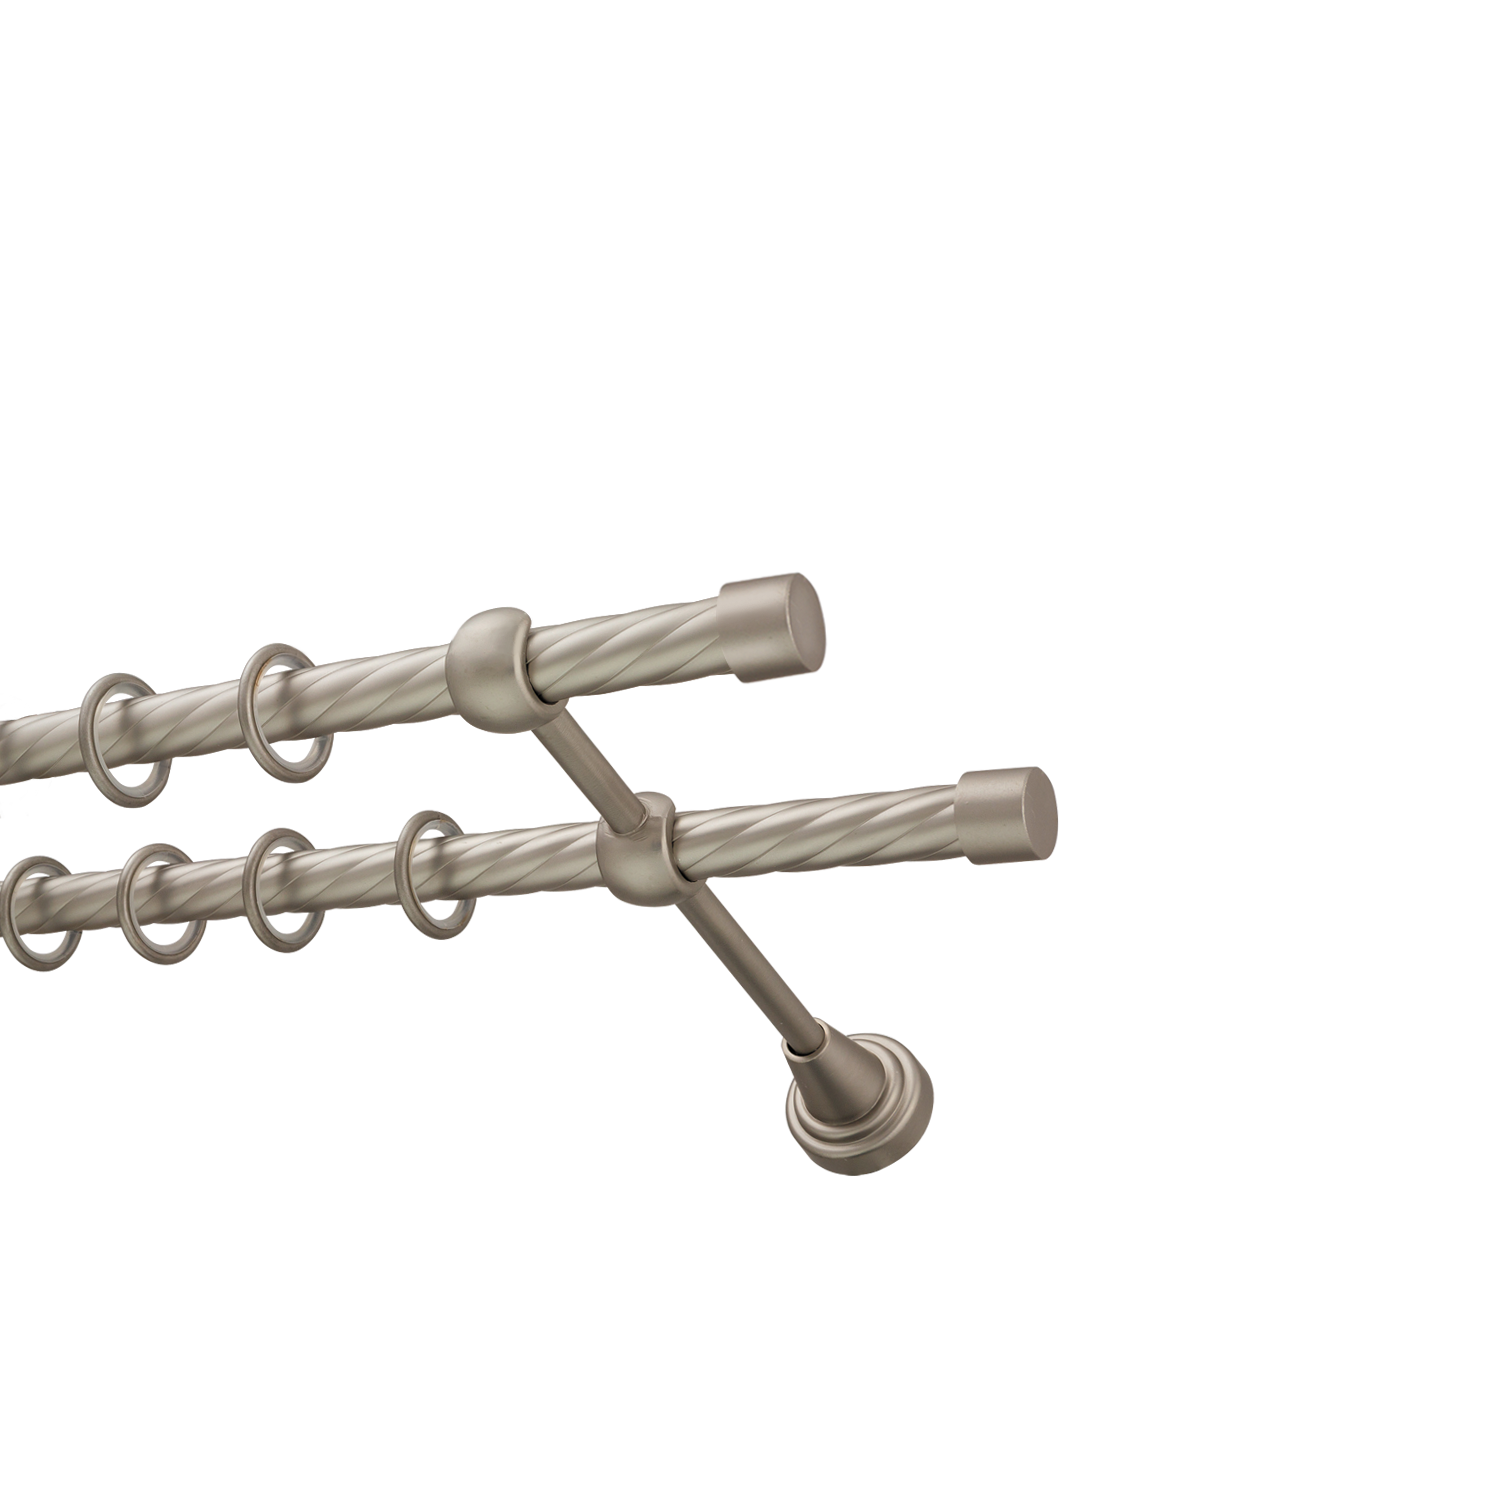 Металлический карниз для штор Заглушка, двухрядный 16/16 мм, сталь, витая штанга, длина 240 см